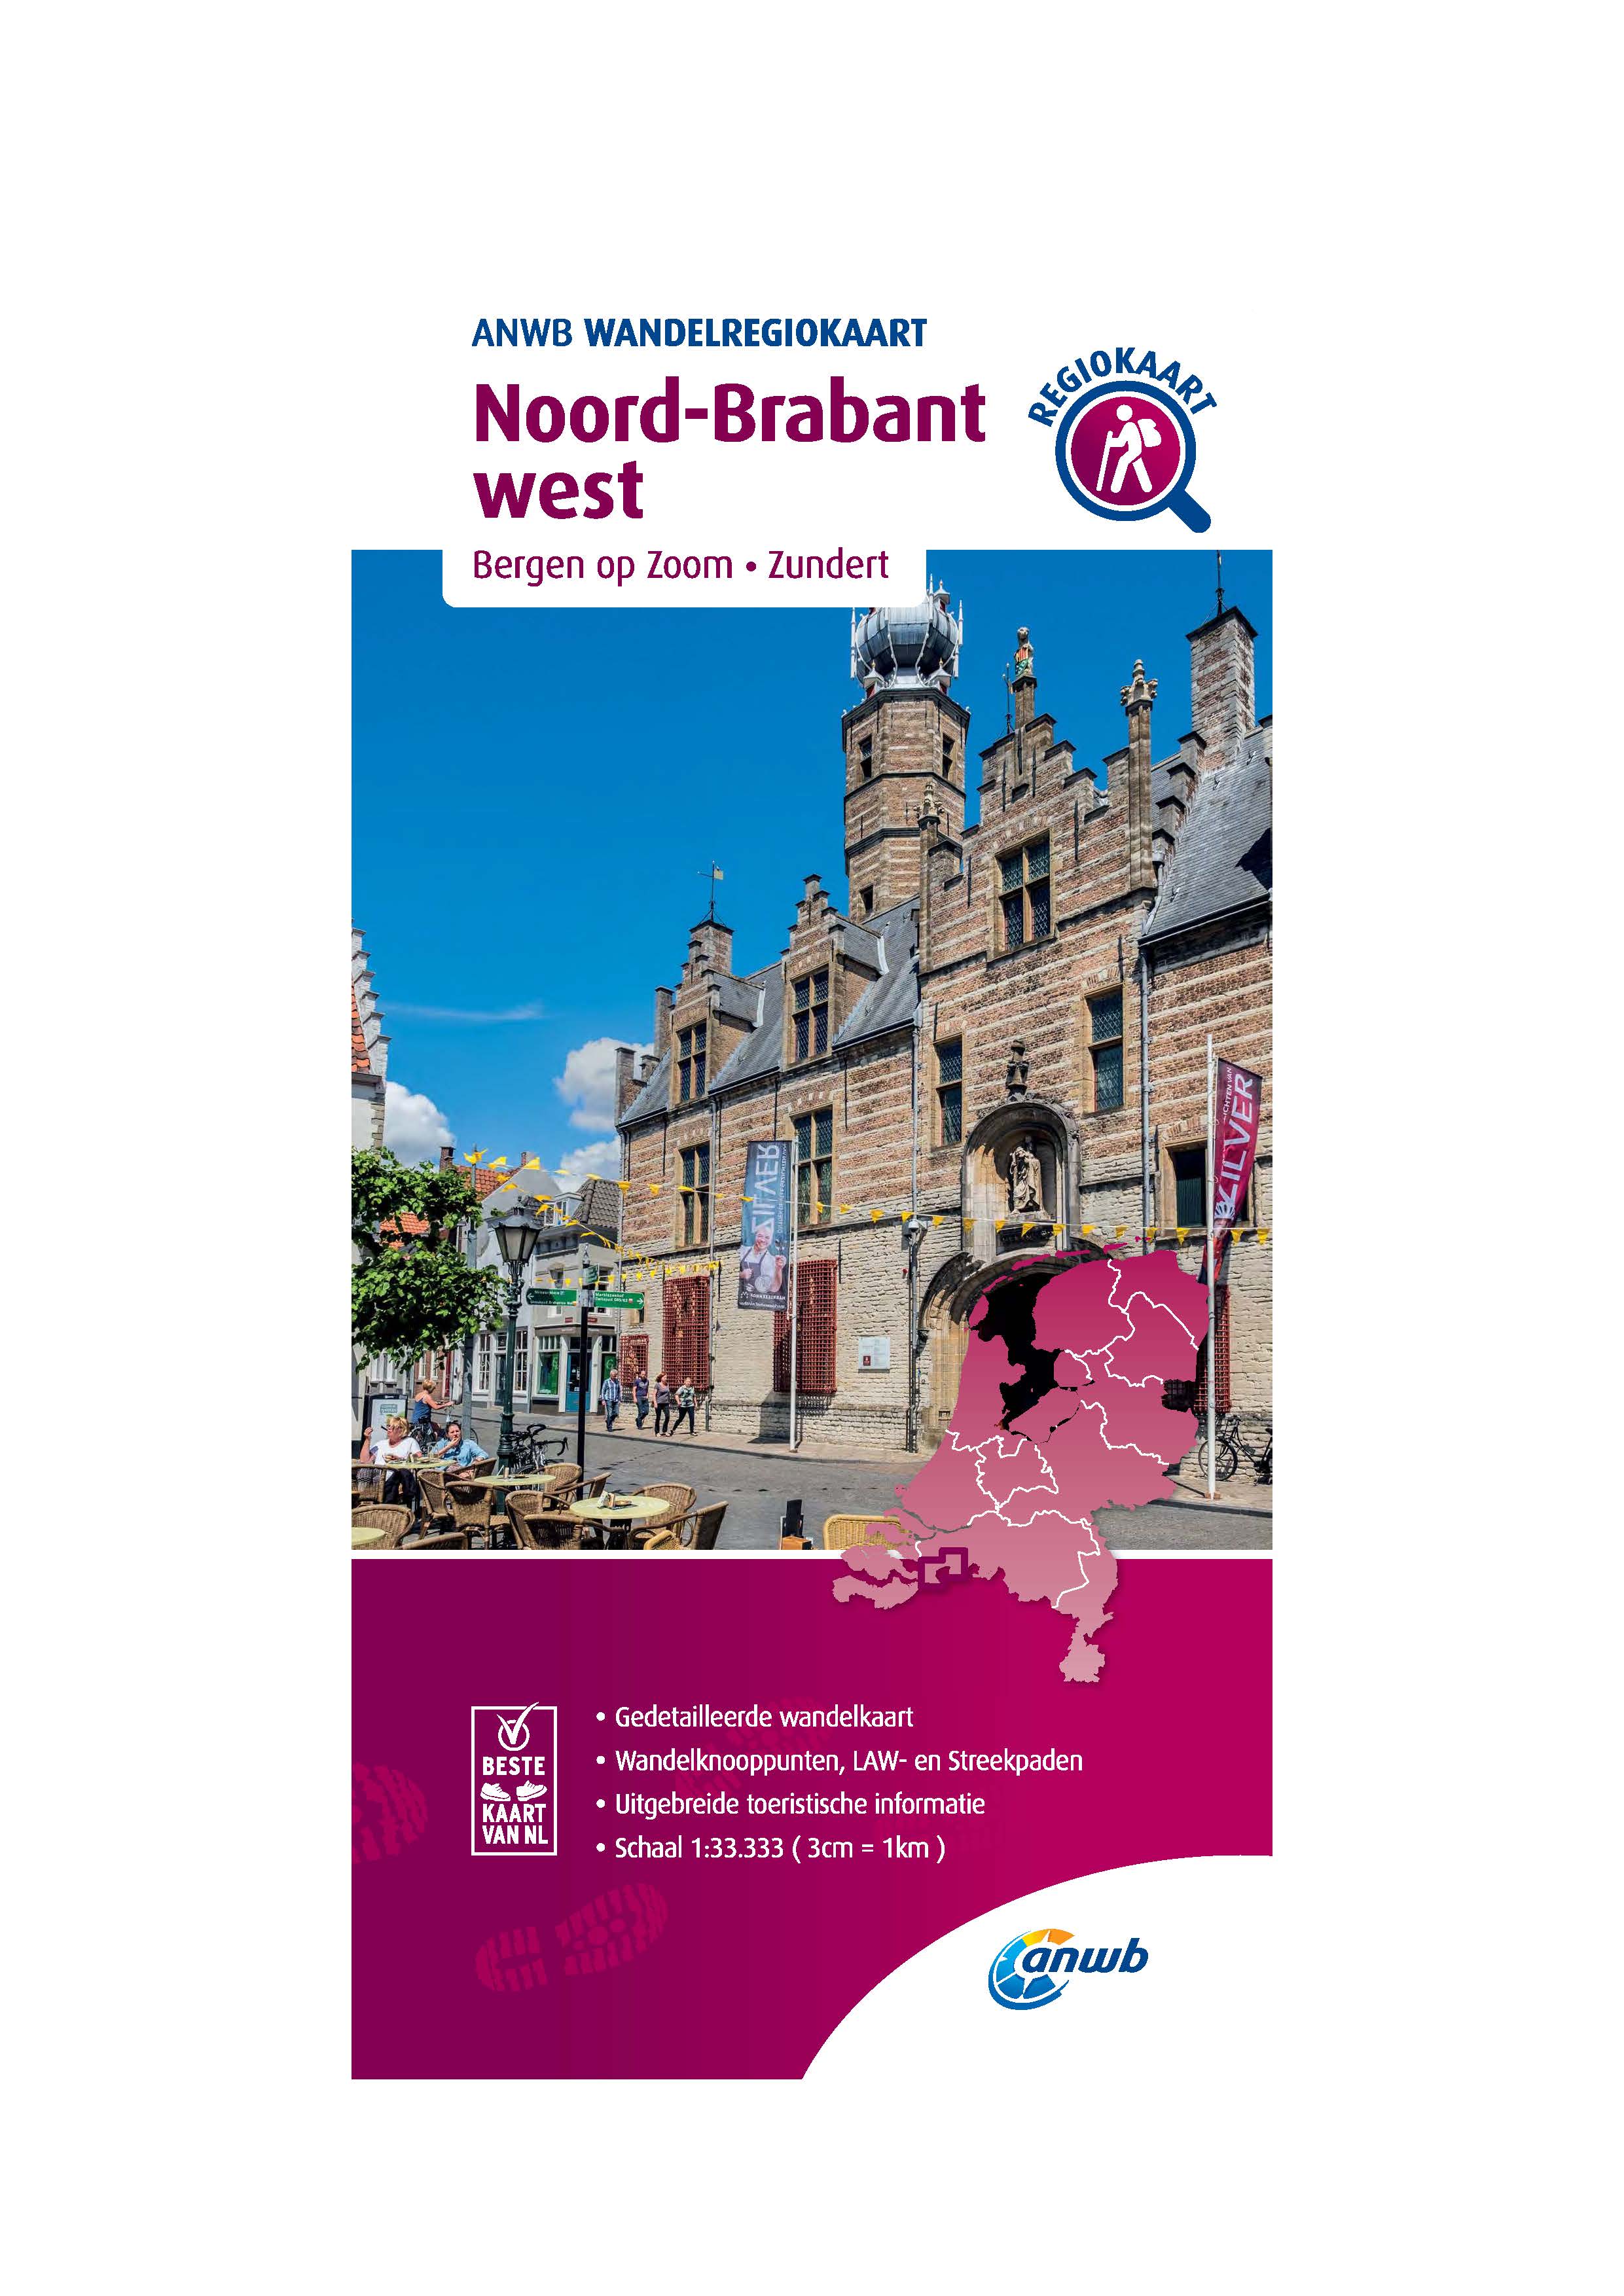 Noord-Brabant West Wandelregiokaart - 1/33